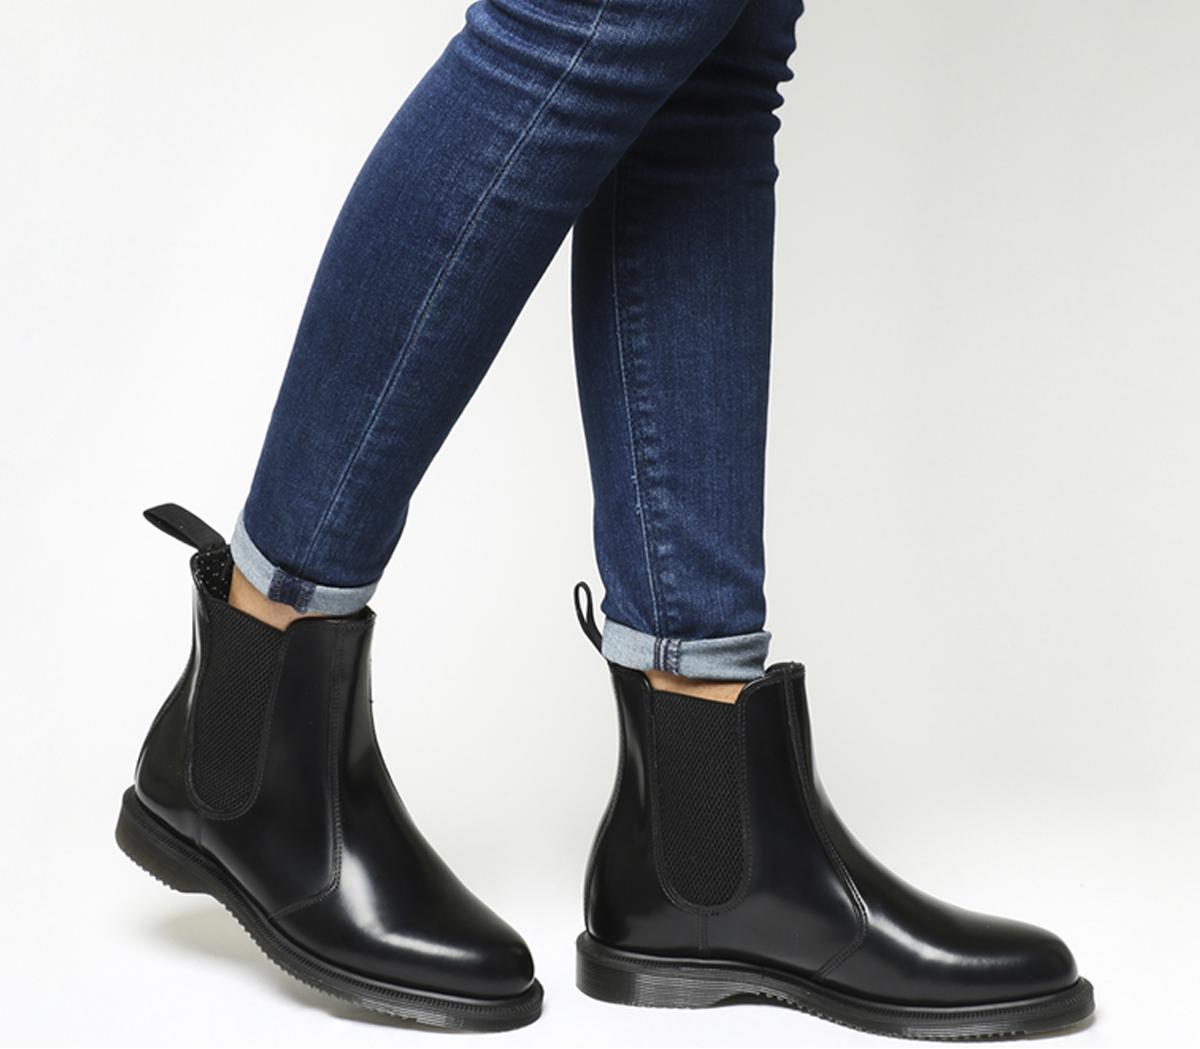 Kensington Chelsea Boot - Men - Shoes